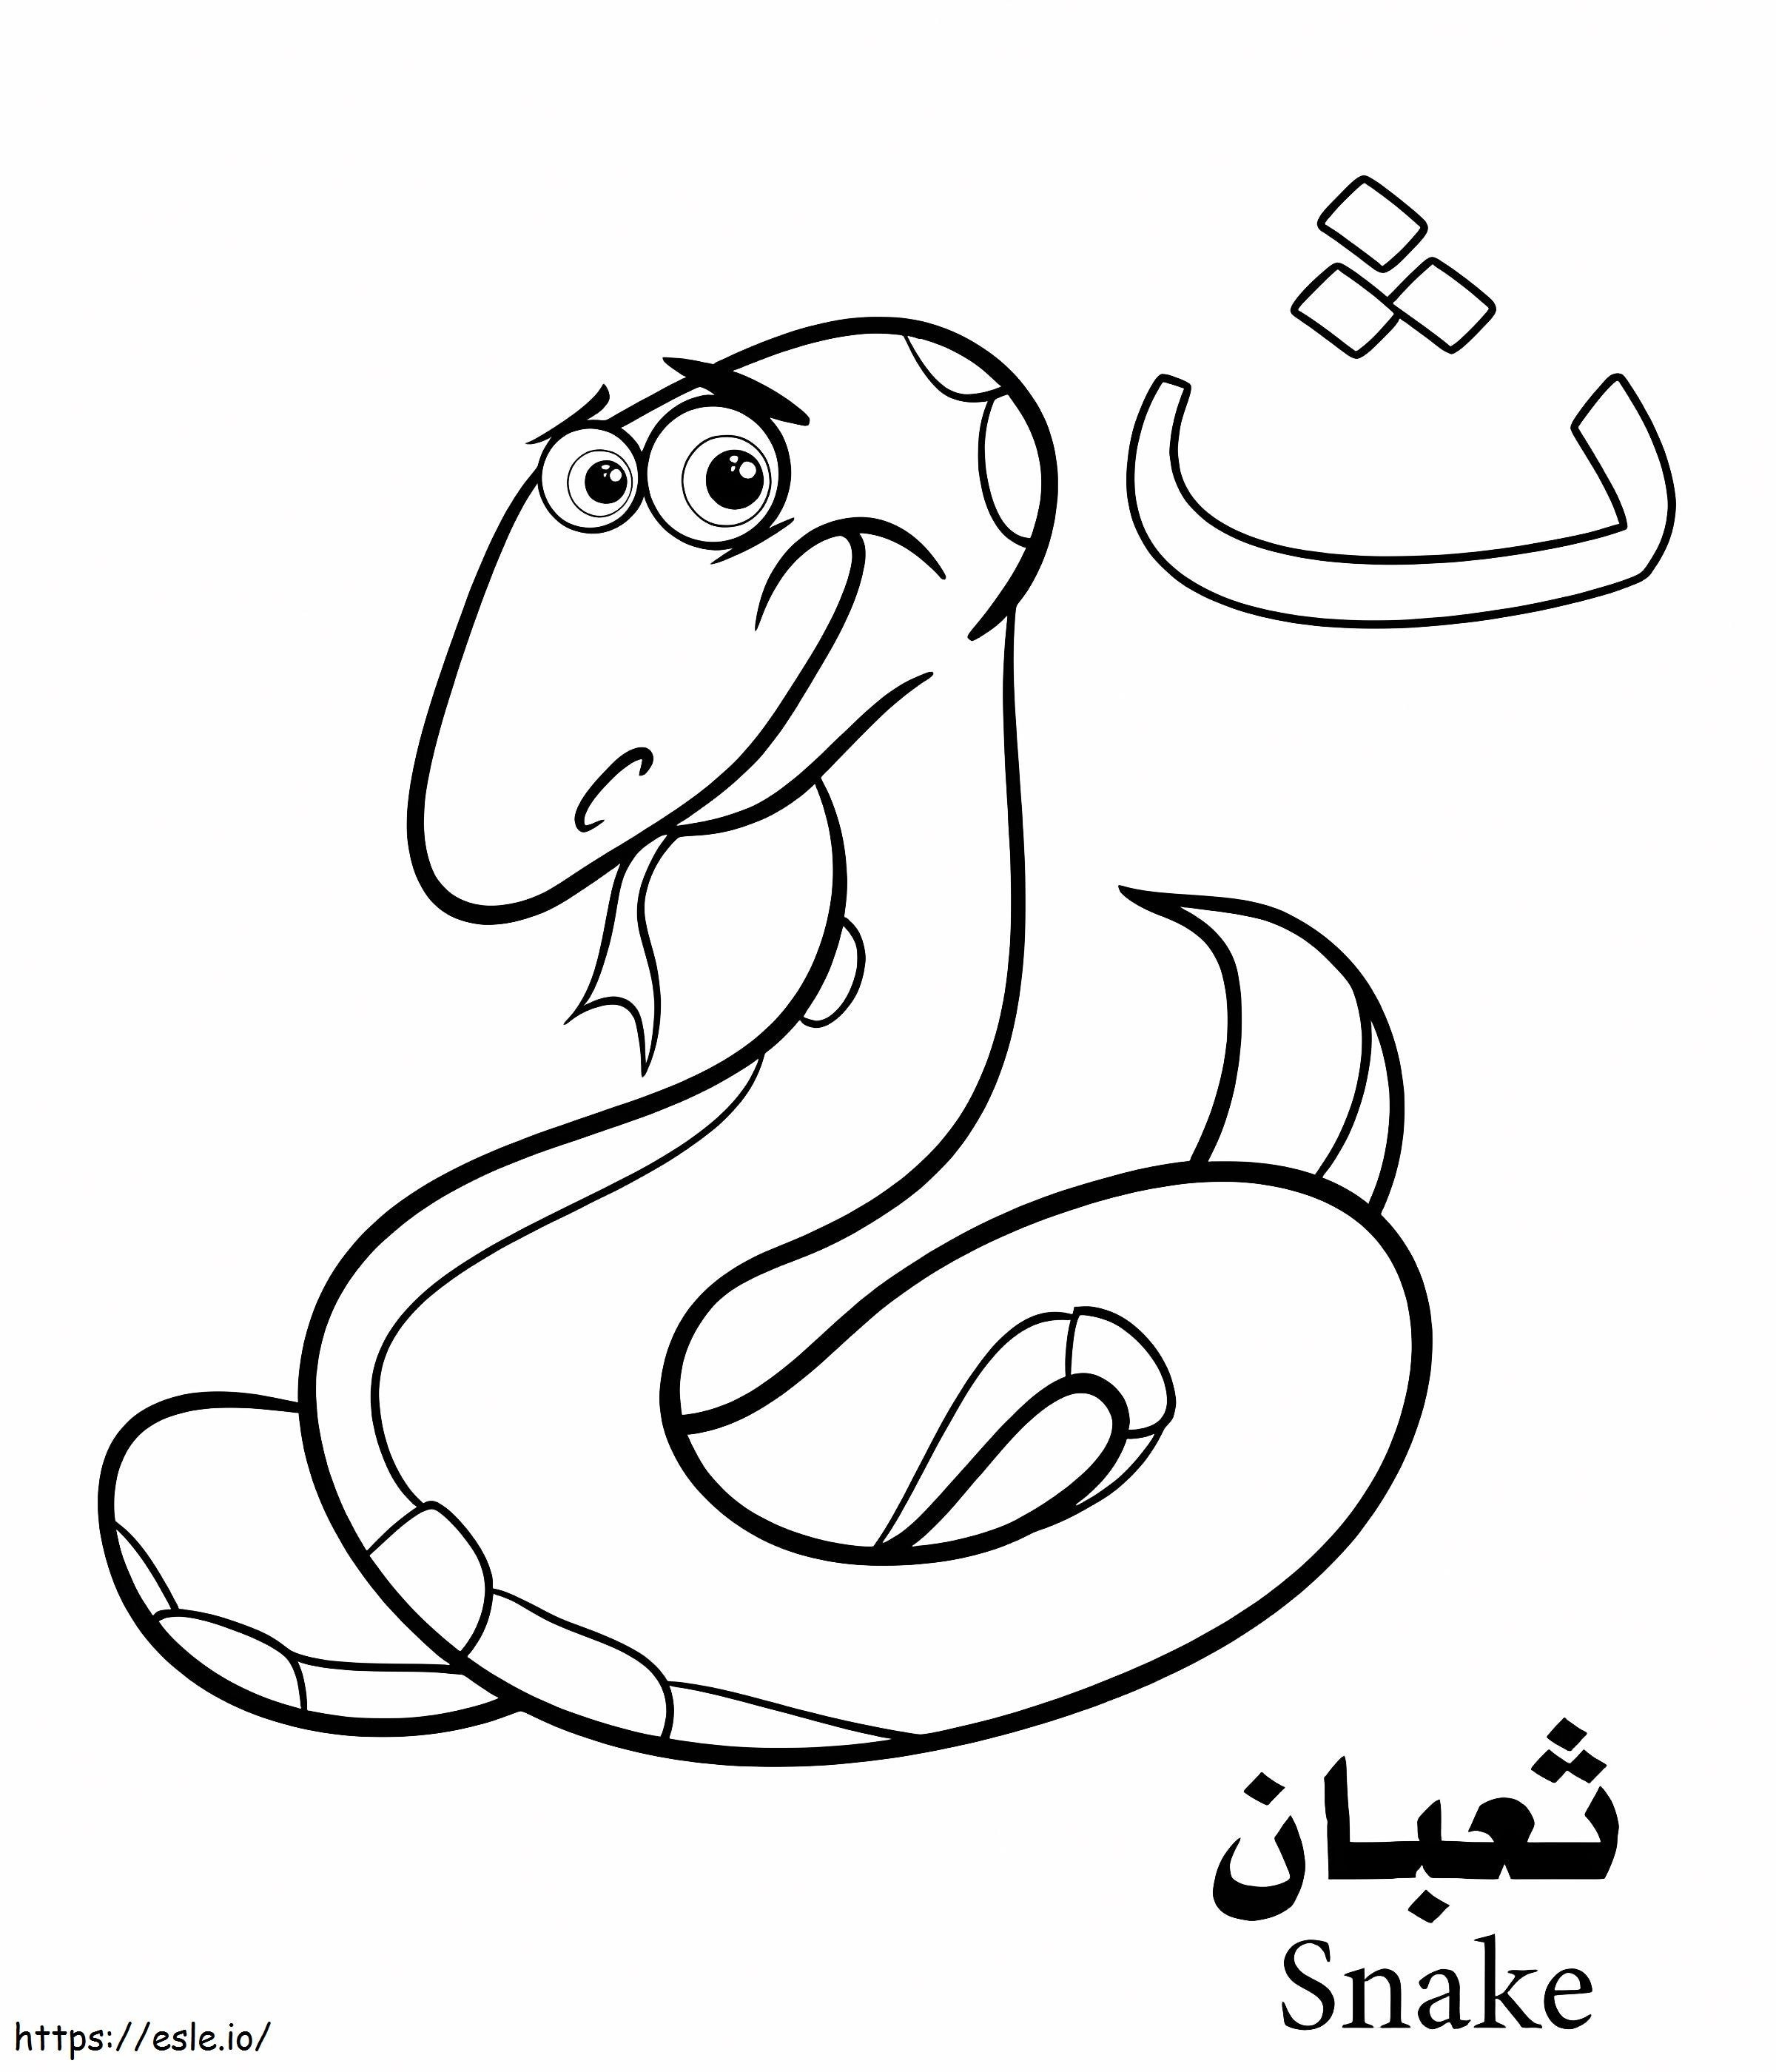 Schlangen-Arabisches Alphabet ausmalbilder